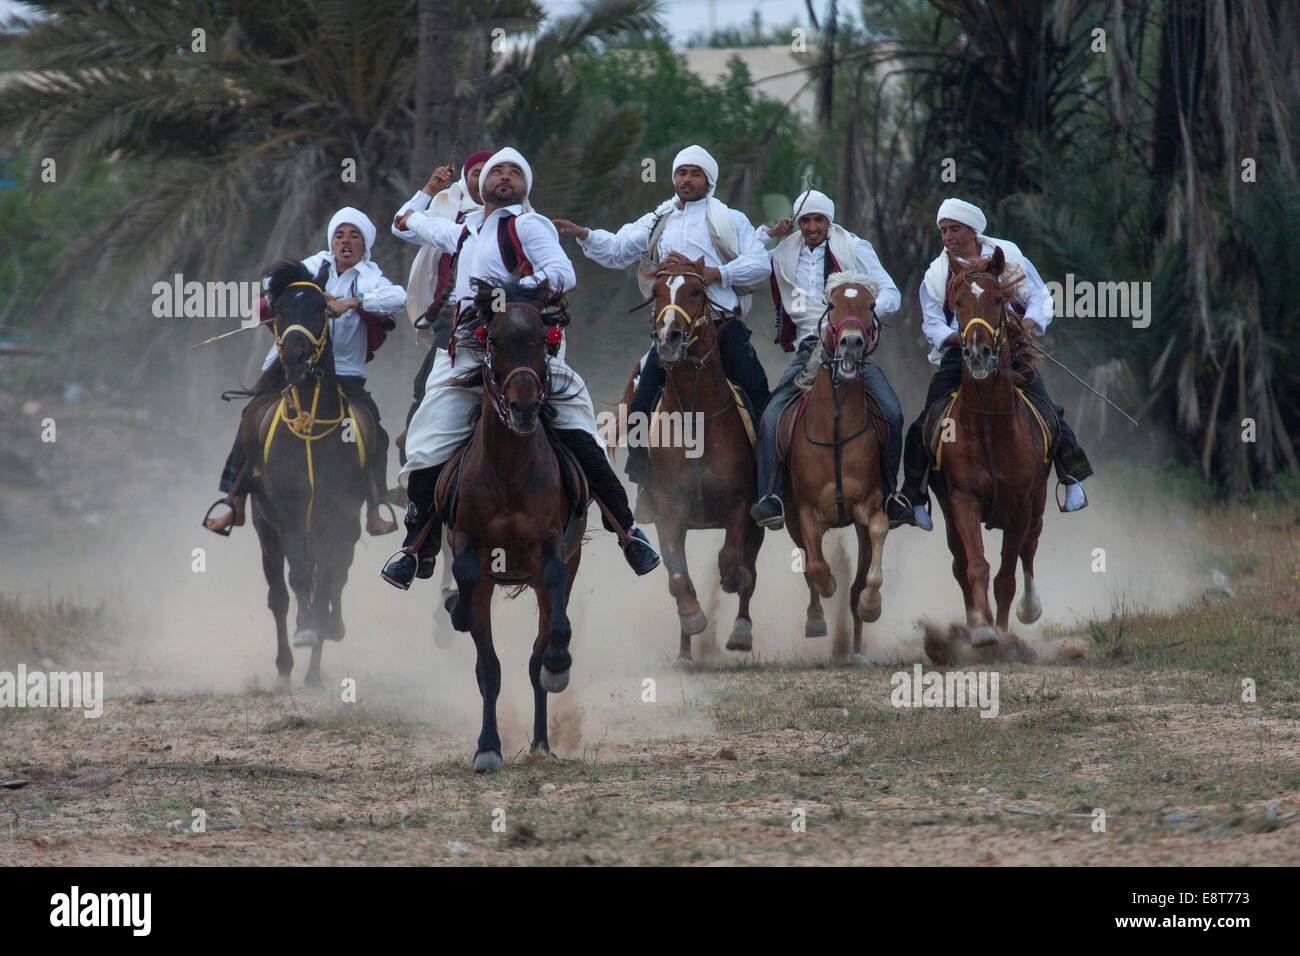 Juegos Ecuestres, Fantasia, Midoun en Djerba, Túnez Foto de stock